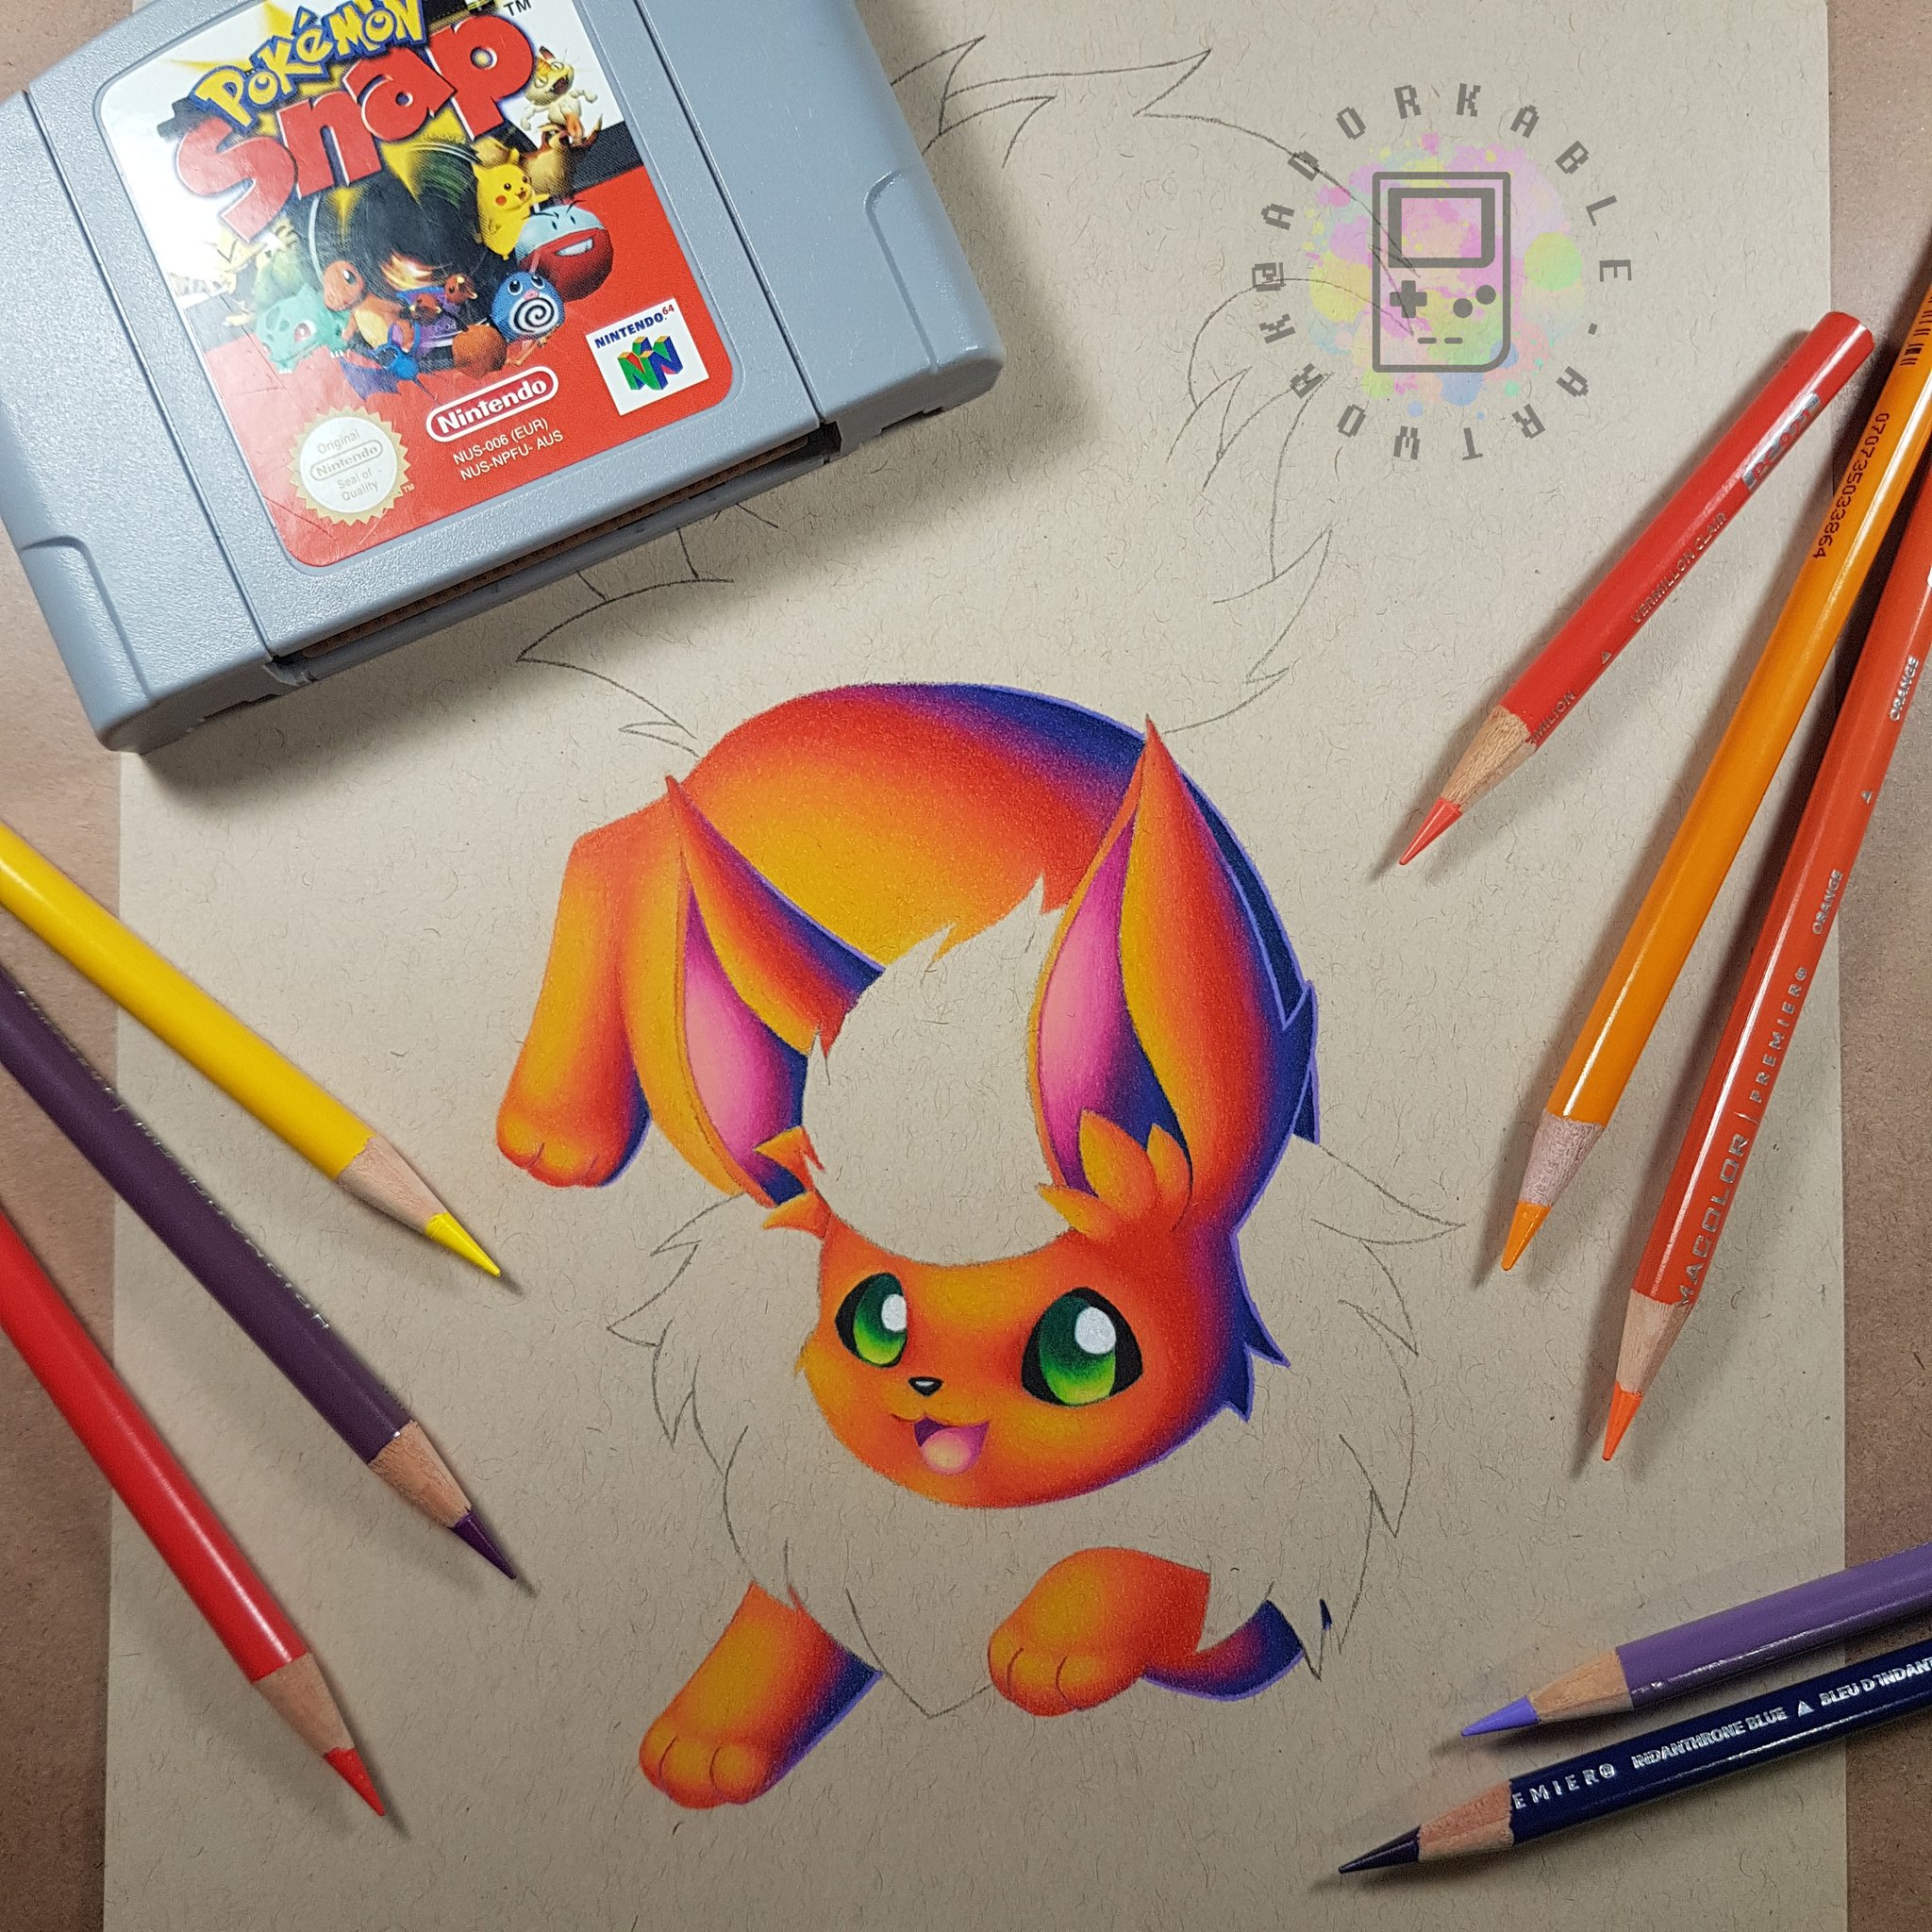 Hãy thử vẽ Pokemon đơn giản nhất và xem nó có trông như thật không! Ảnh liên quan đến từ khóa này sẽ giúp bạn thấy cách vẽ Pokemon thật dễ dàng và thú vị!